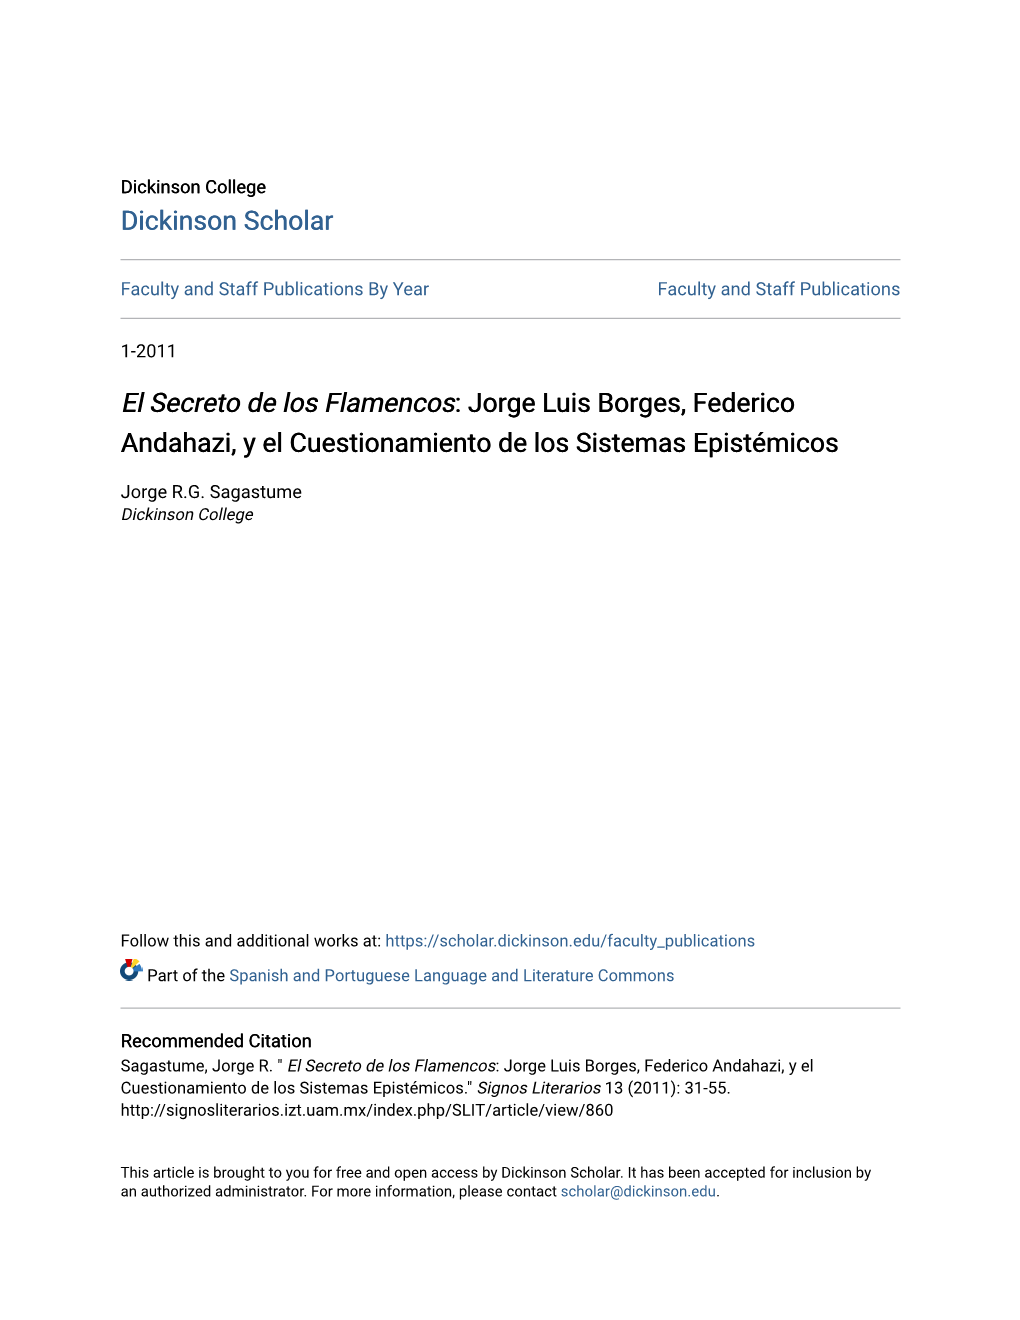 Jorge Luis Borges, Federico Andahazi, Y El Cuestionamiento De Los Sistemas Epistémicos